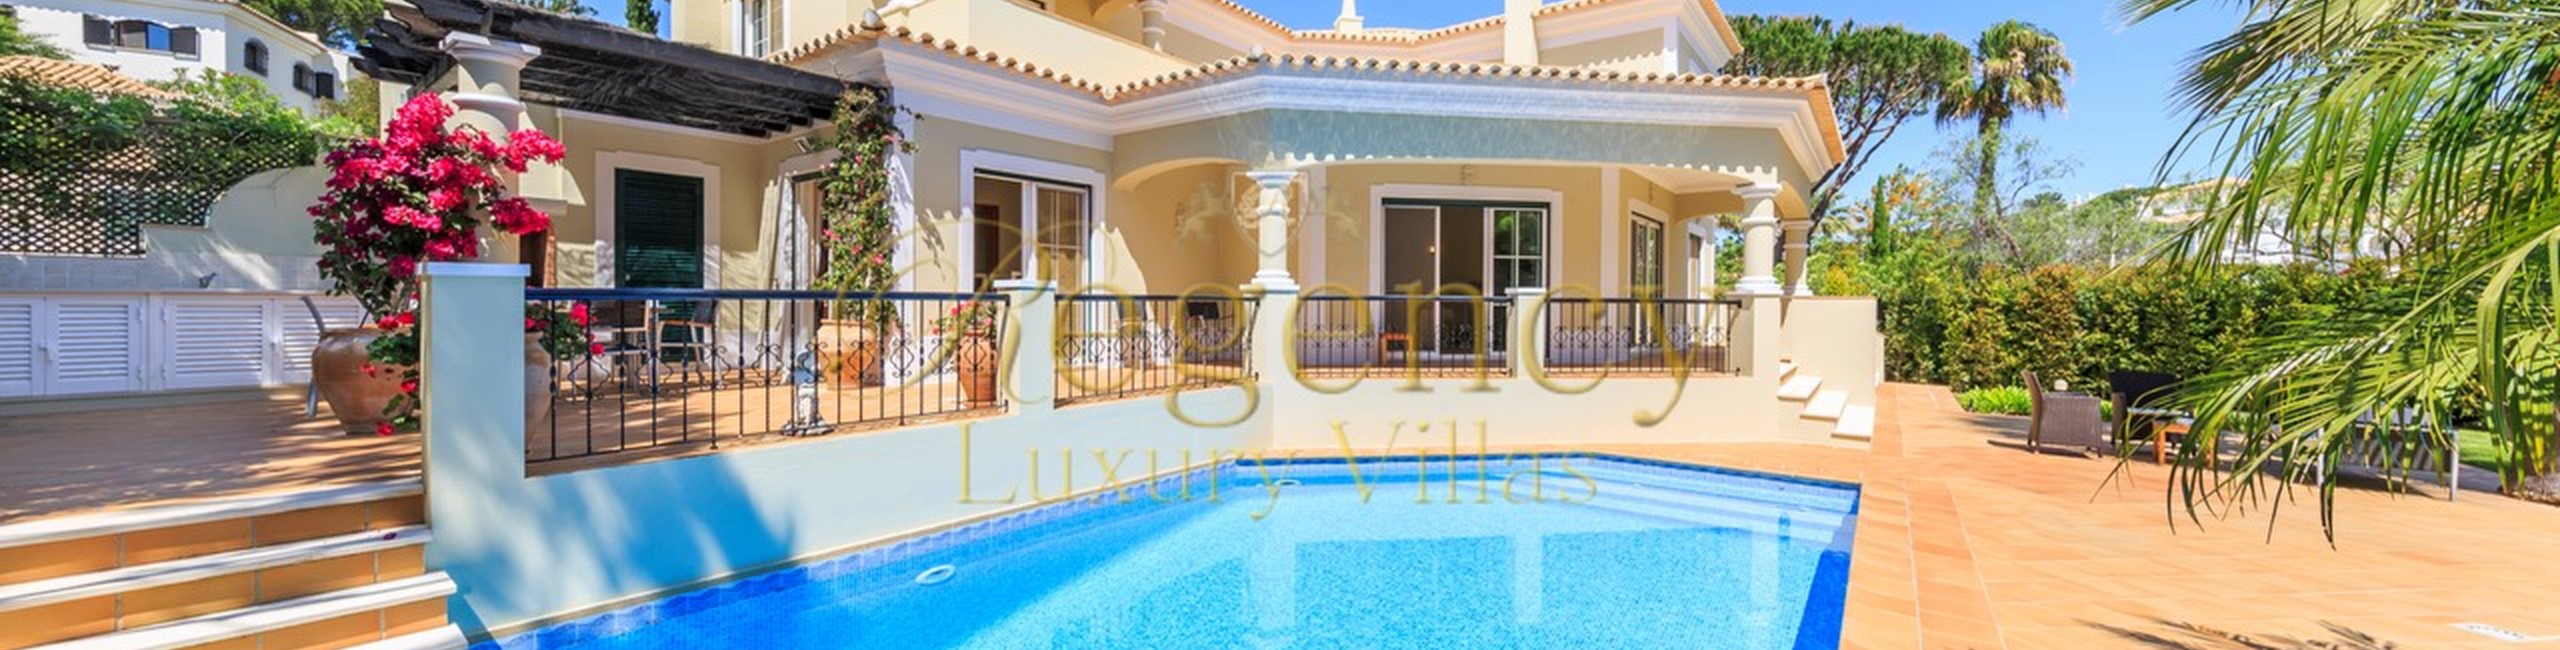 3 Bedroom Villa To Rent In Vale Do Lobo Villa Siberian Regency Luxury Villas 26